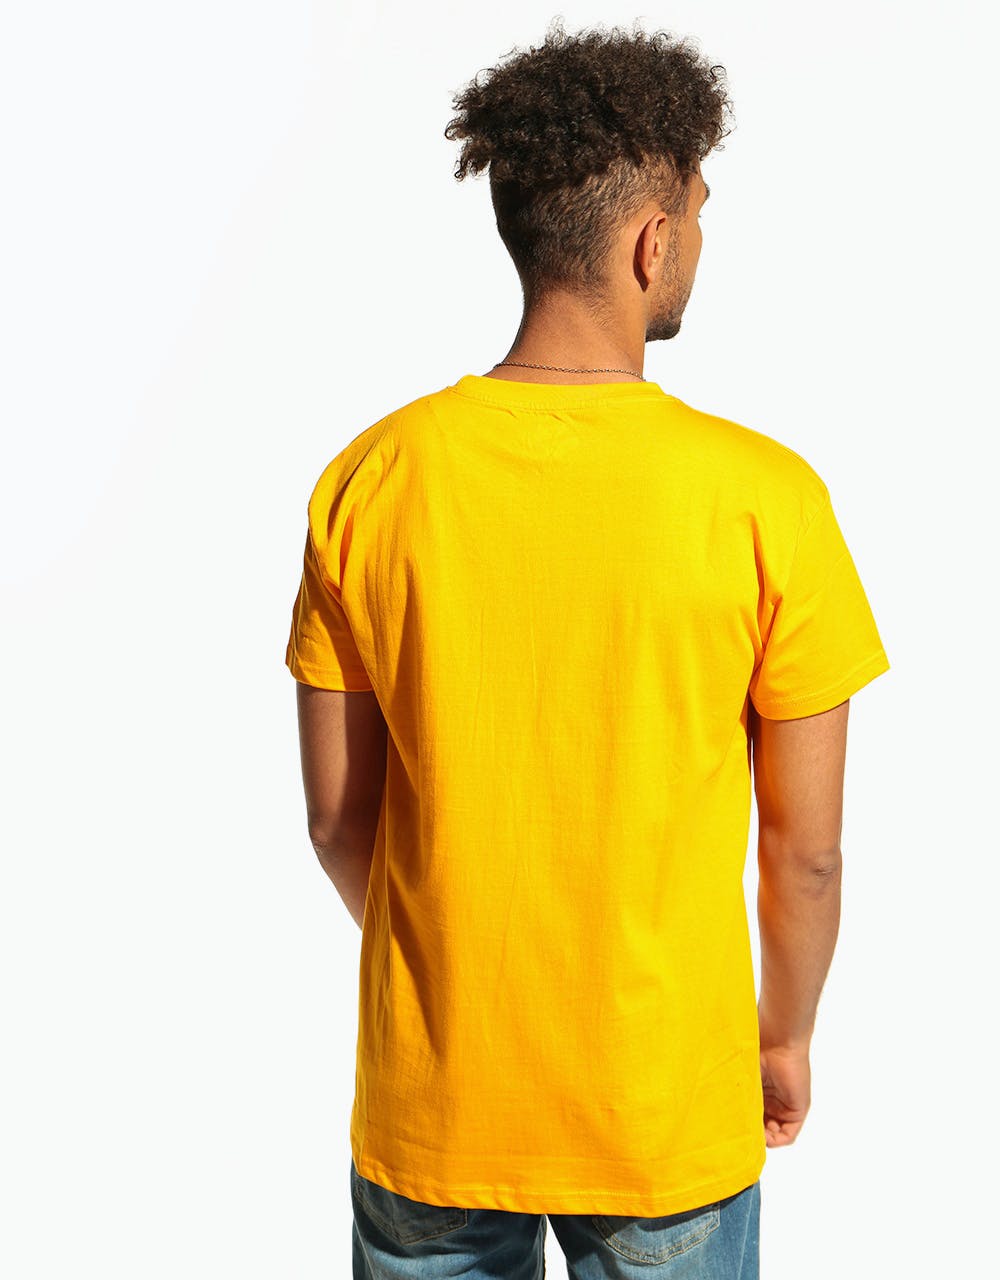 Magenta Swirl T-Shirt - Yellow